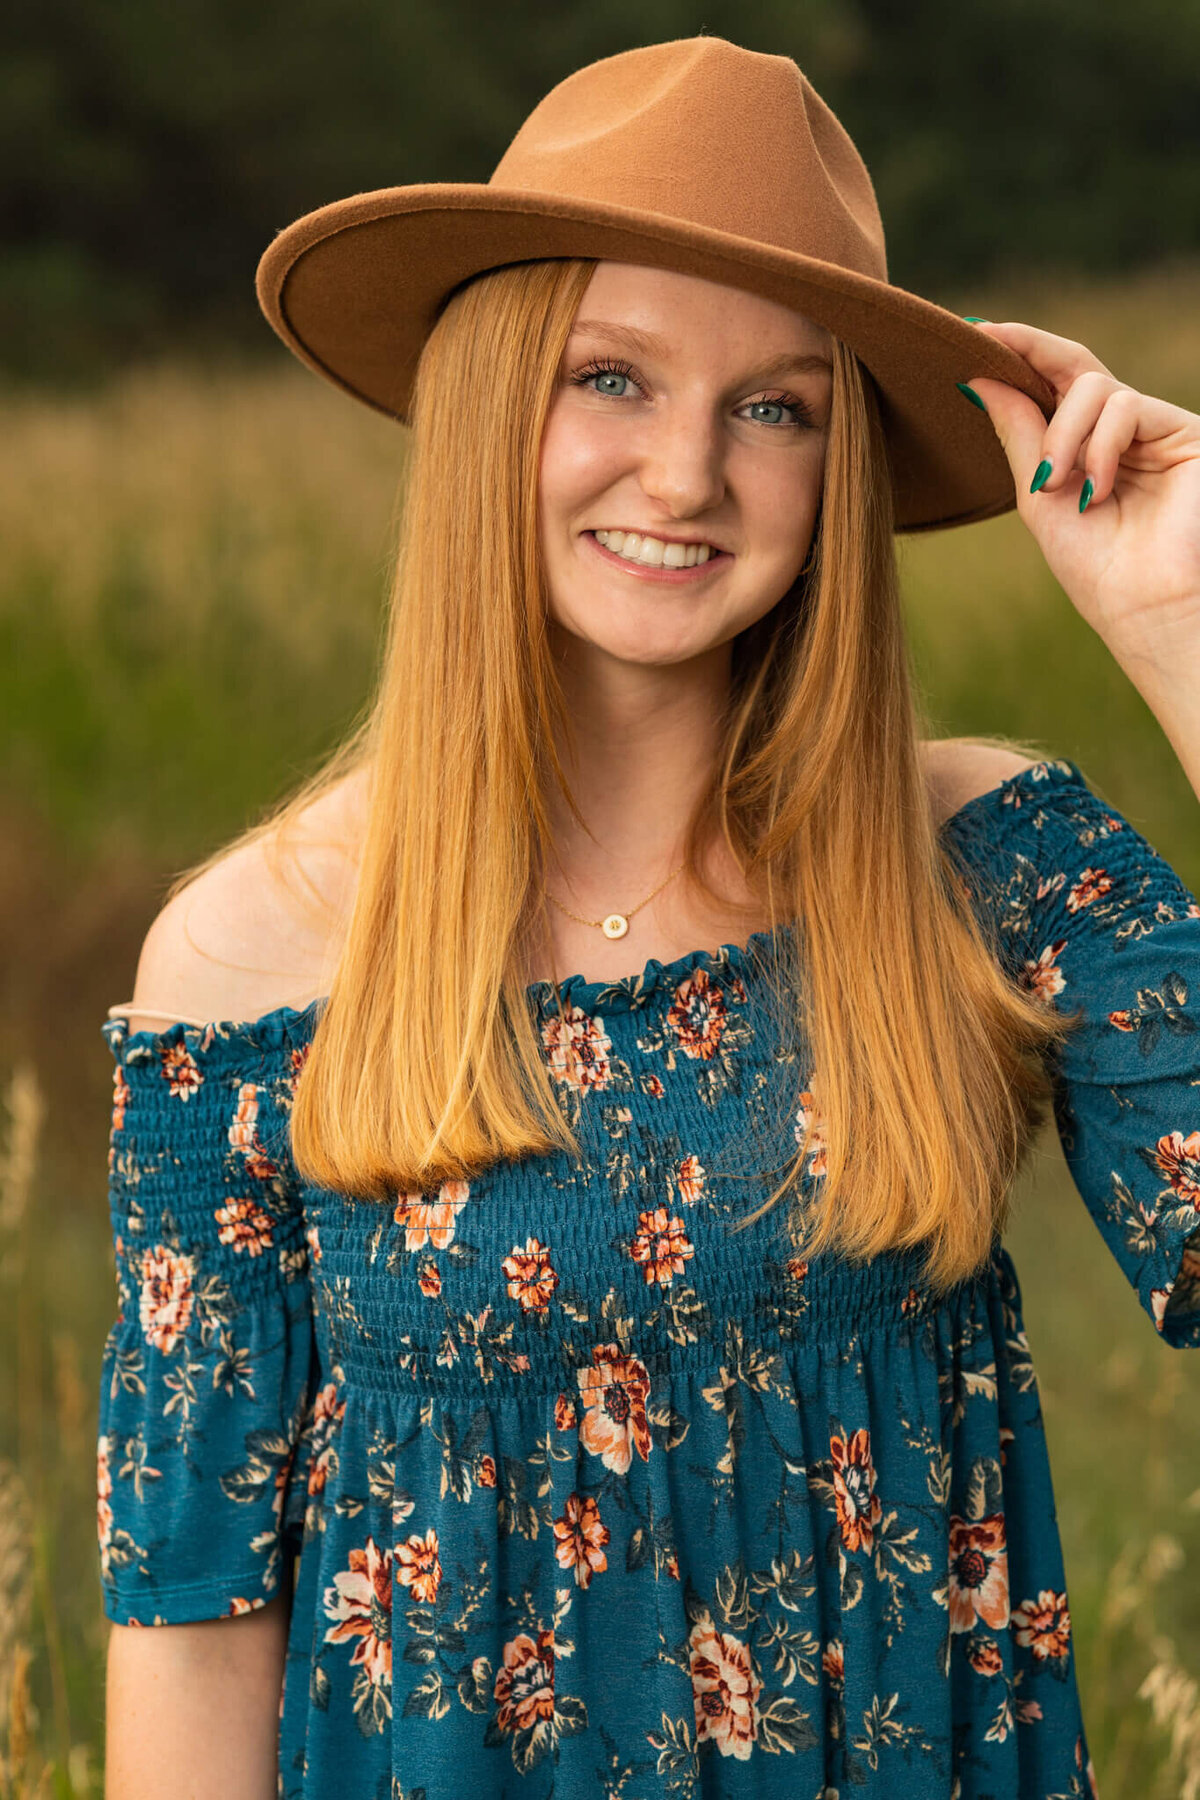 high school senior girl smiling holding her hat